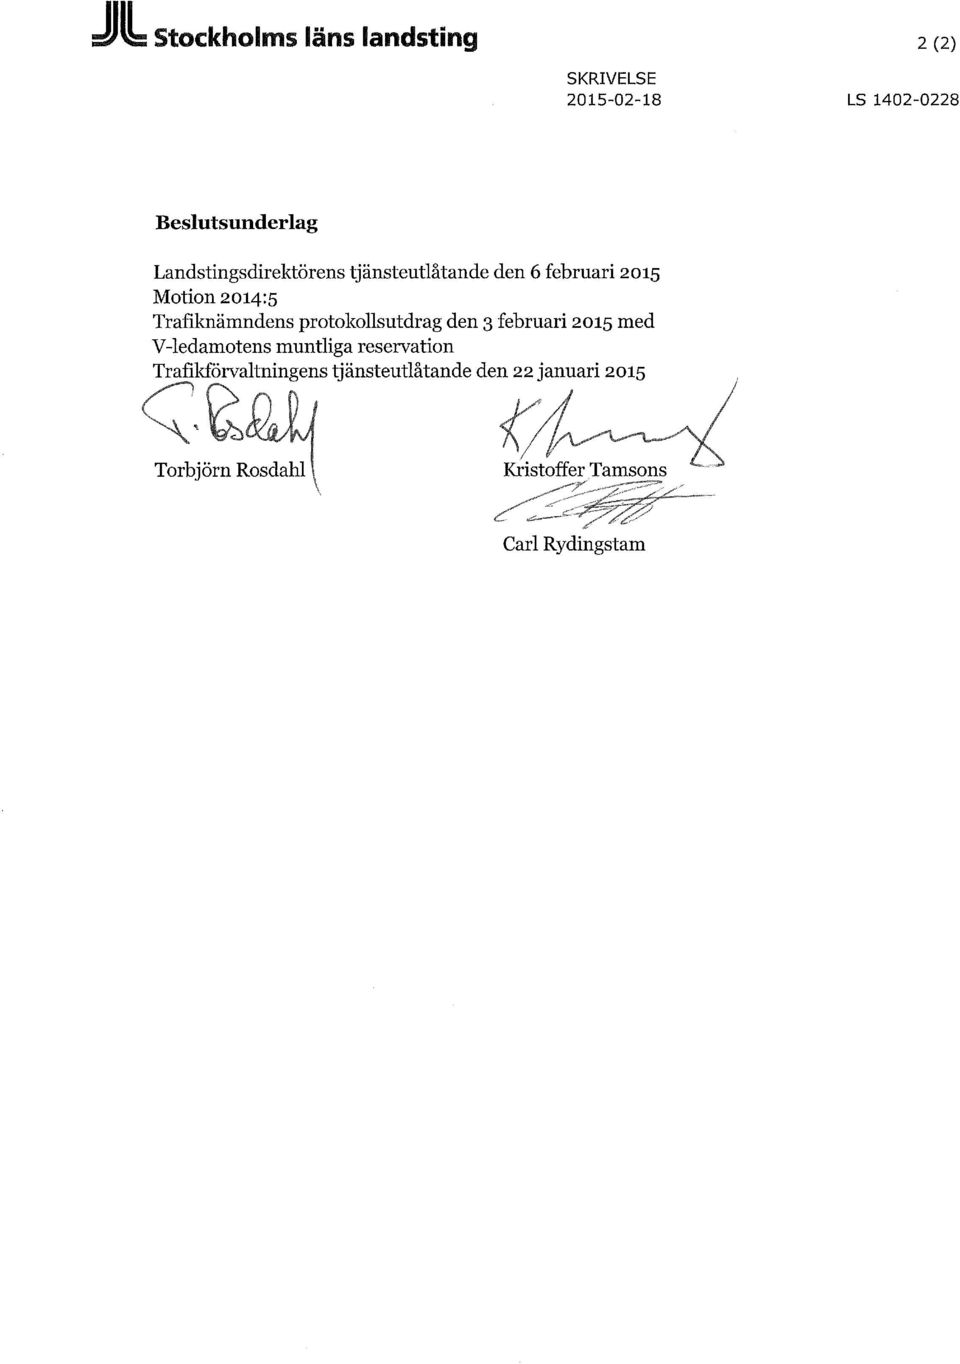 Trafilaiämndens protokollsutdrag den 3 februari 2015 med V-ledamotens muntliga